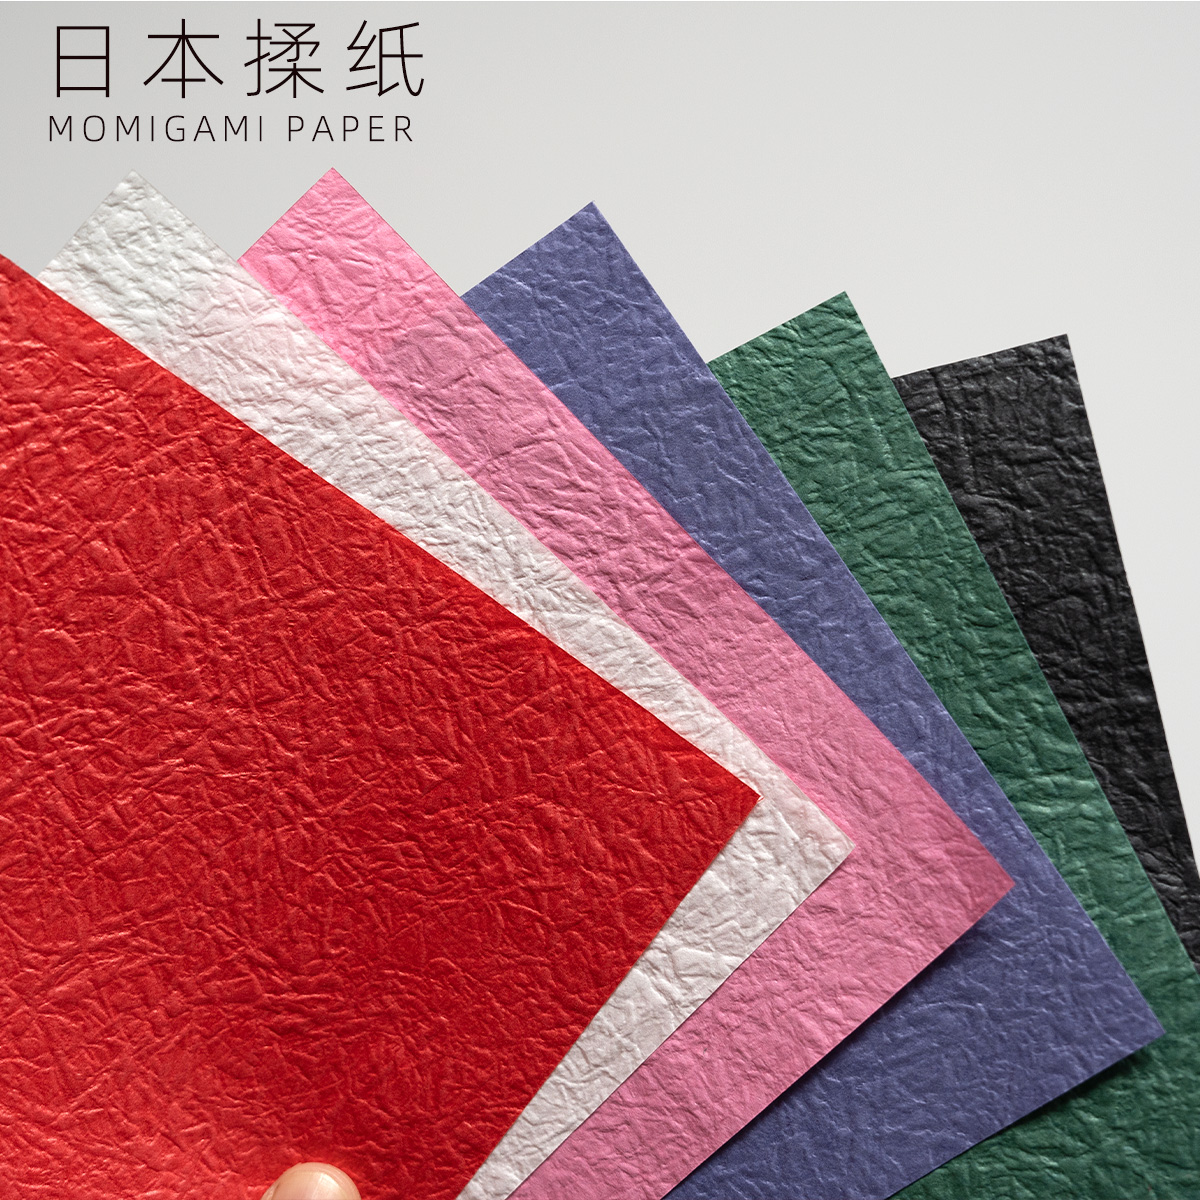 日本进口手揉纸60克神谷哲史天马古代龙折纸专用纸折叠之间手揉纸